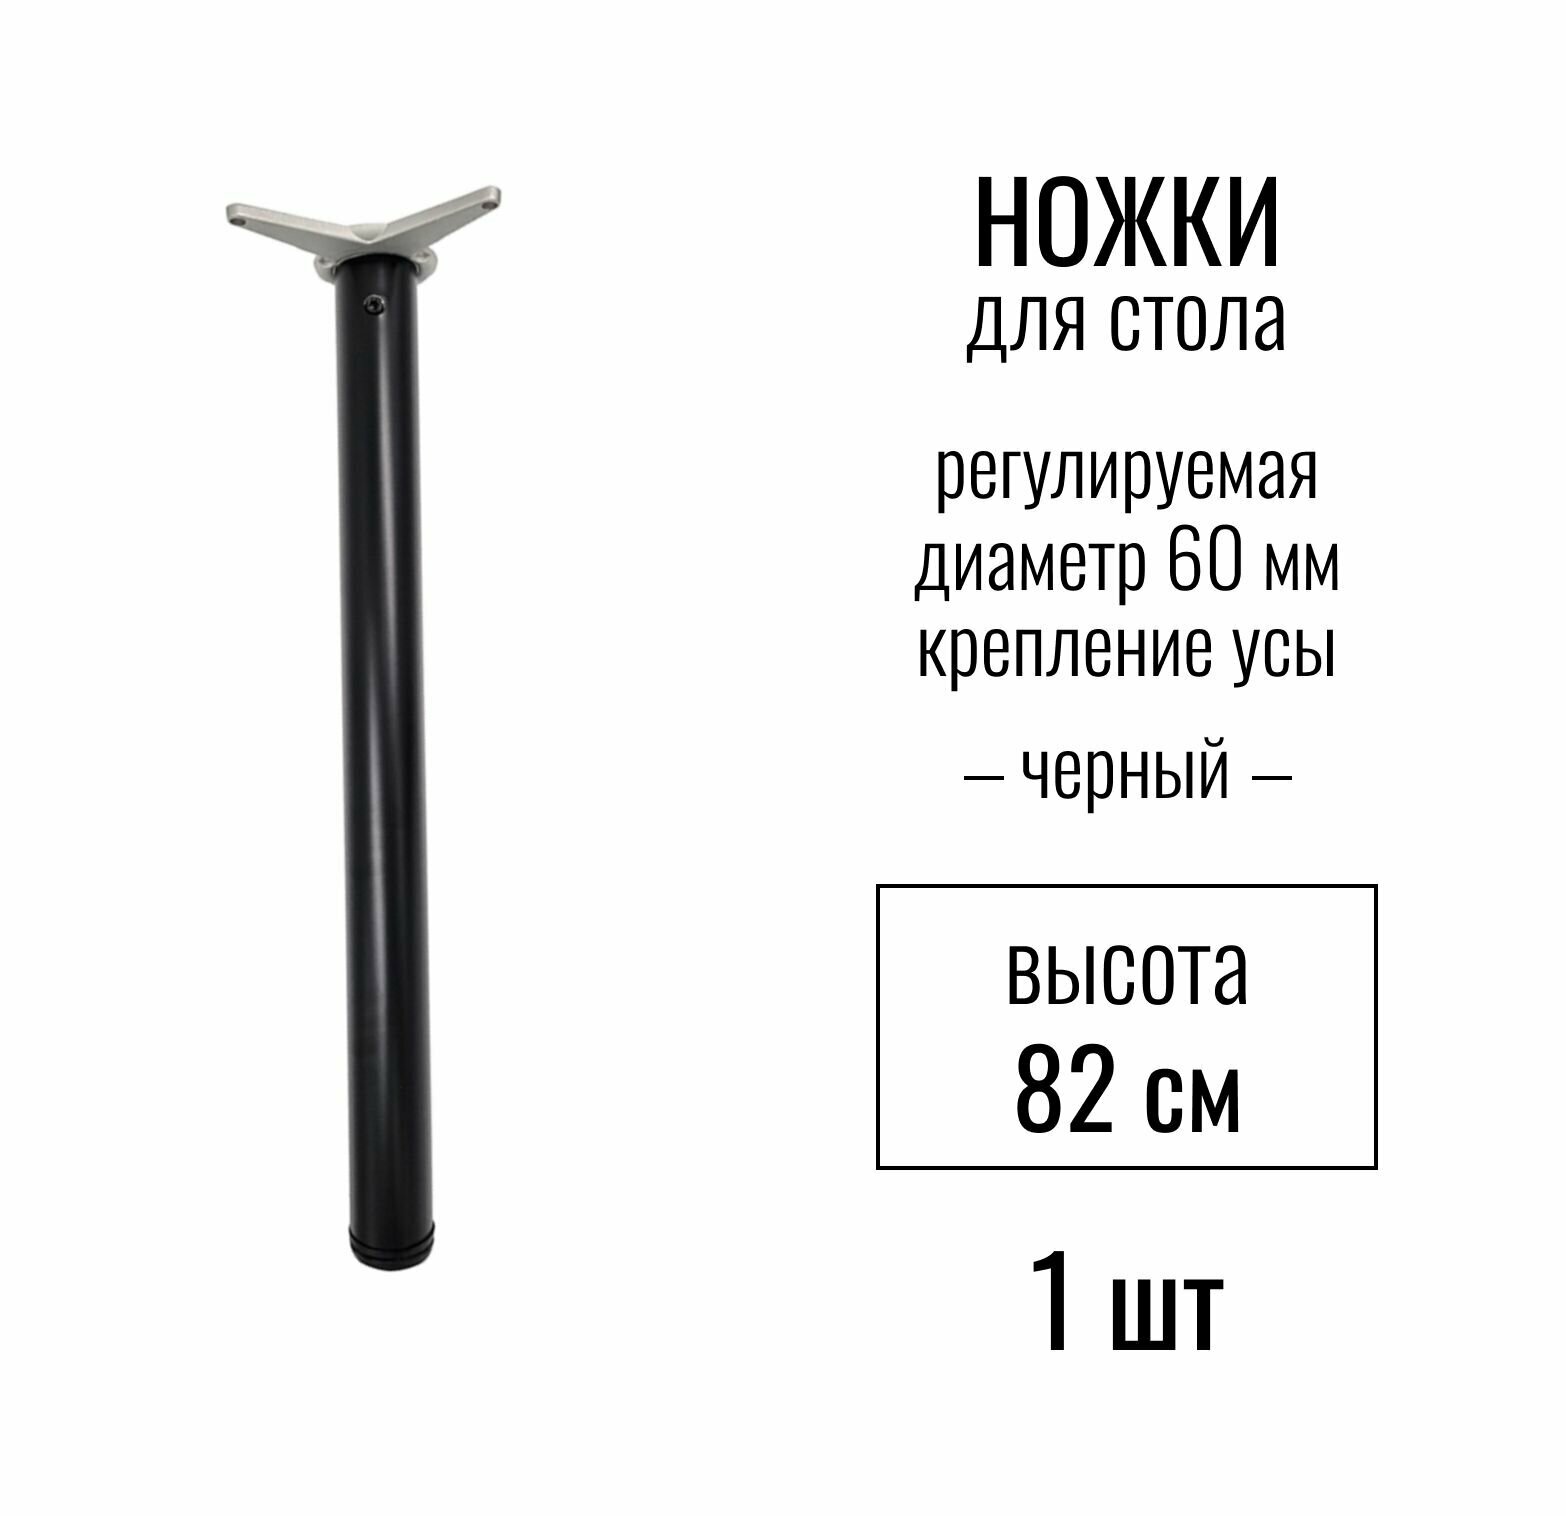 Ножки для стола высота 820 мм (D 60 мм) центральное крепление регулируемые крепление УСЫ подстолье / опора мебельная металлическая для столешницы цвет черный 1 шт